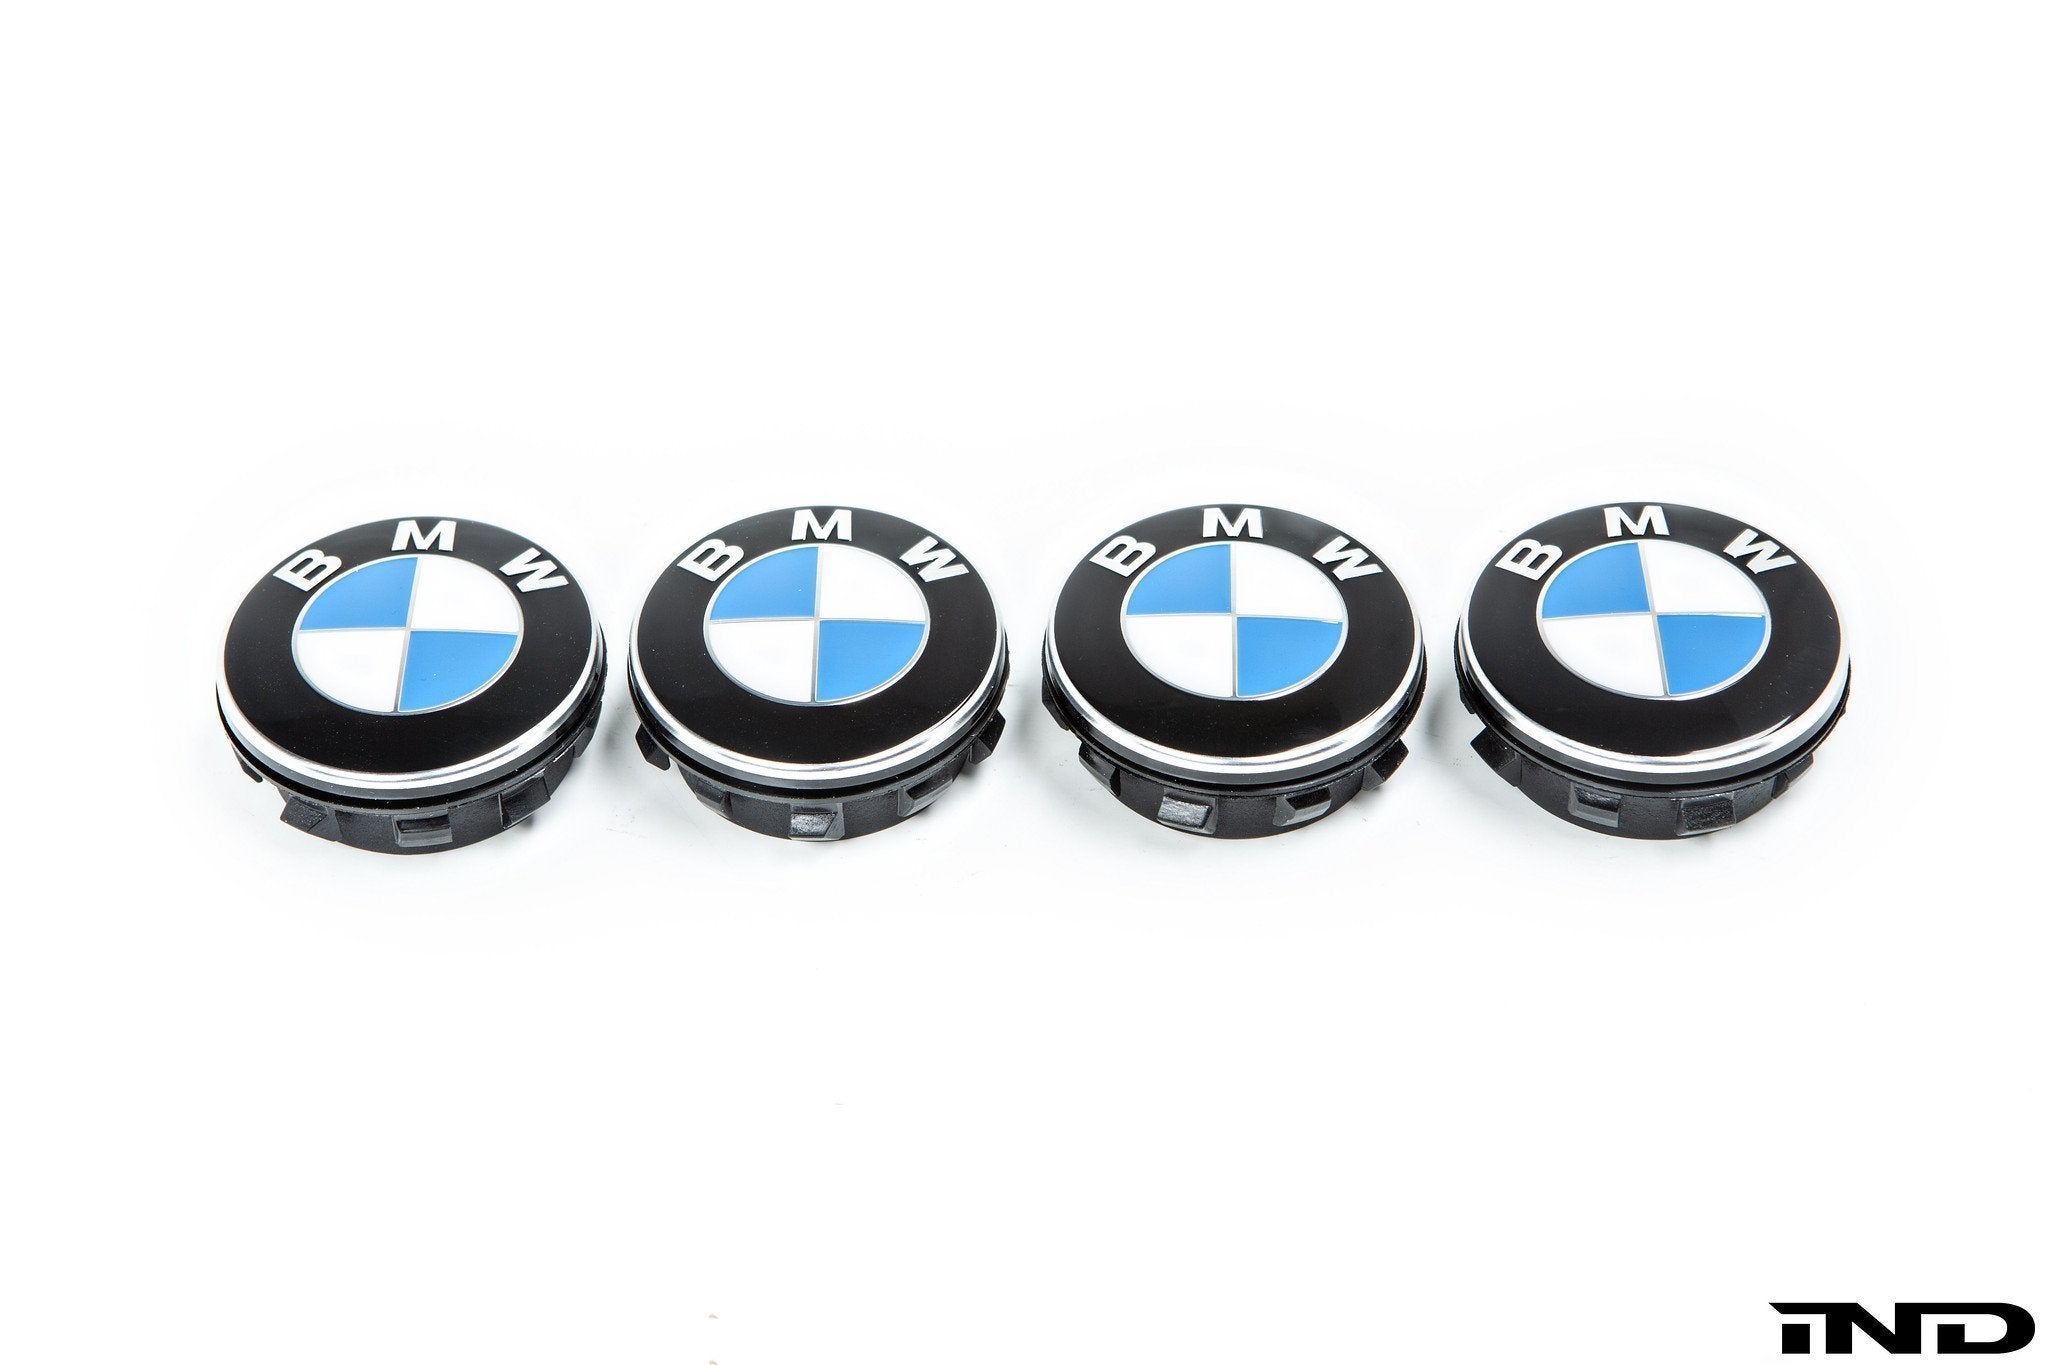 Housses de roues BMW M Performance